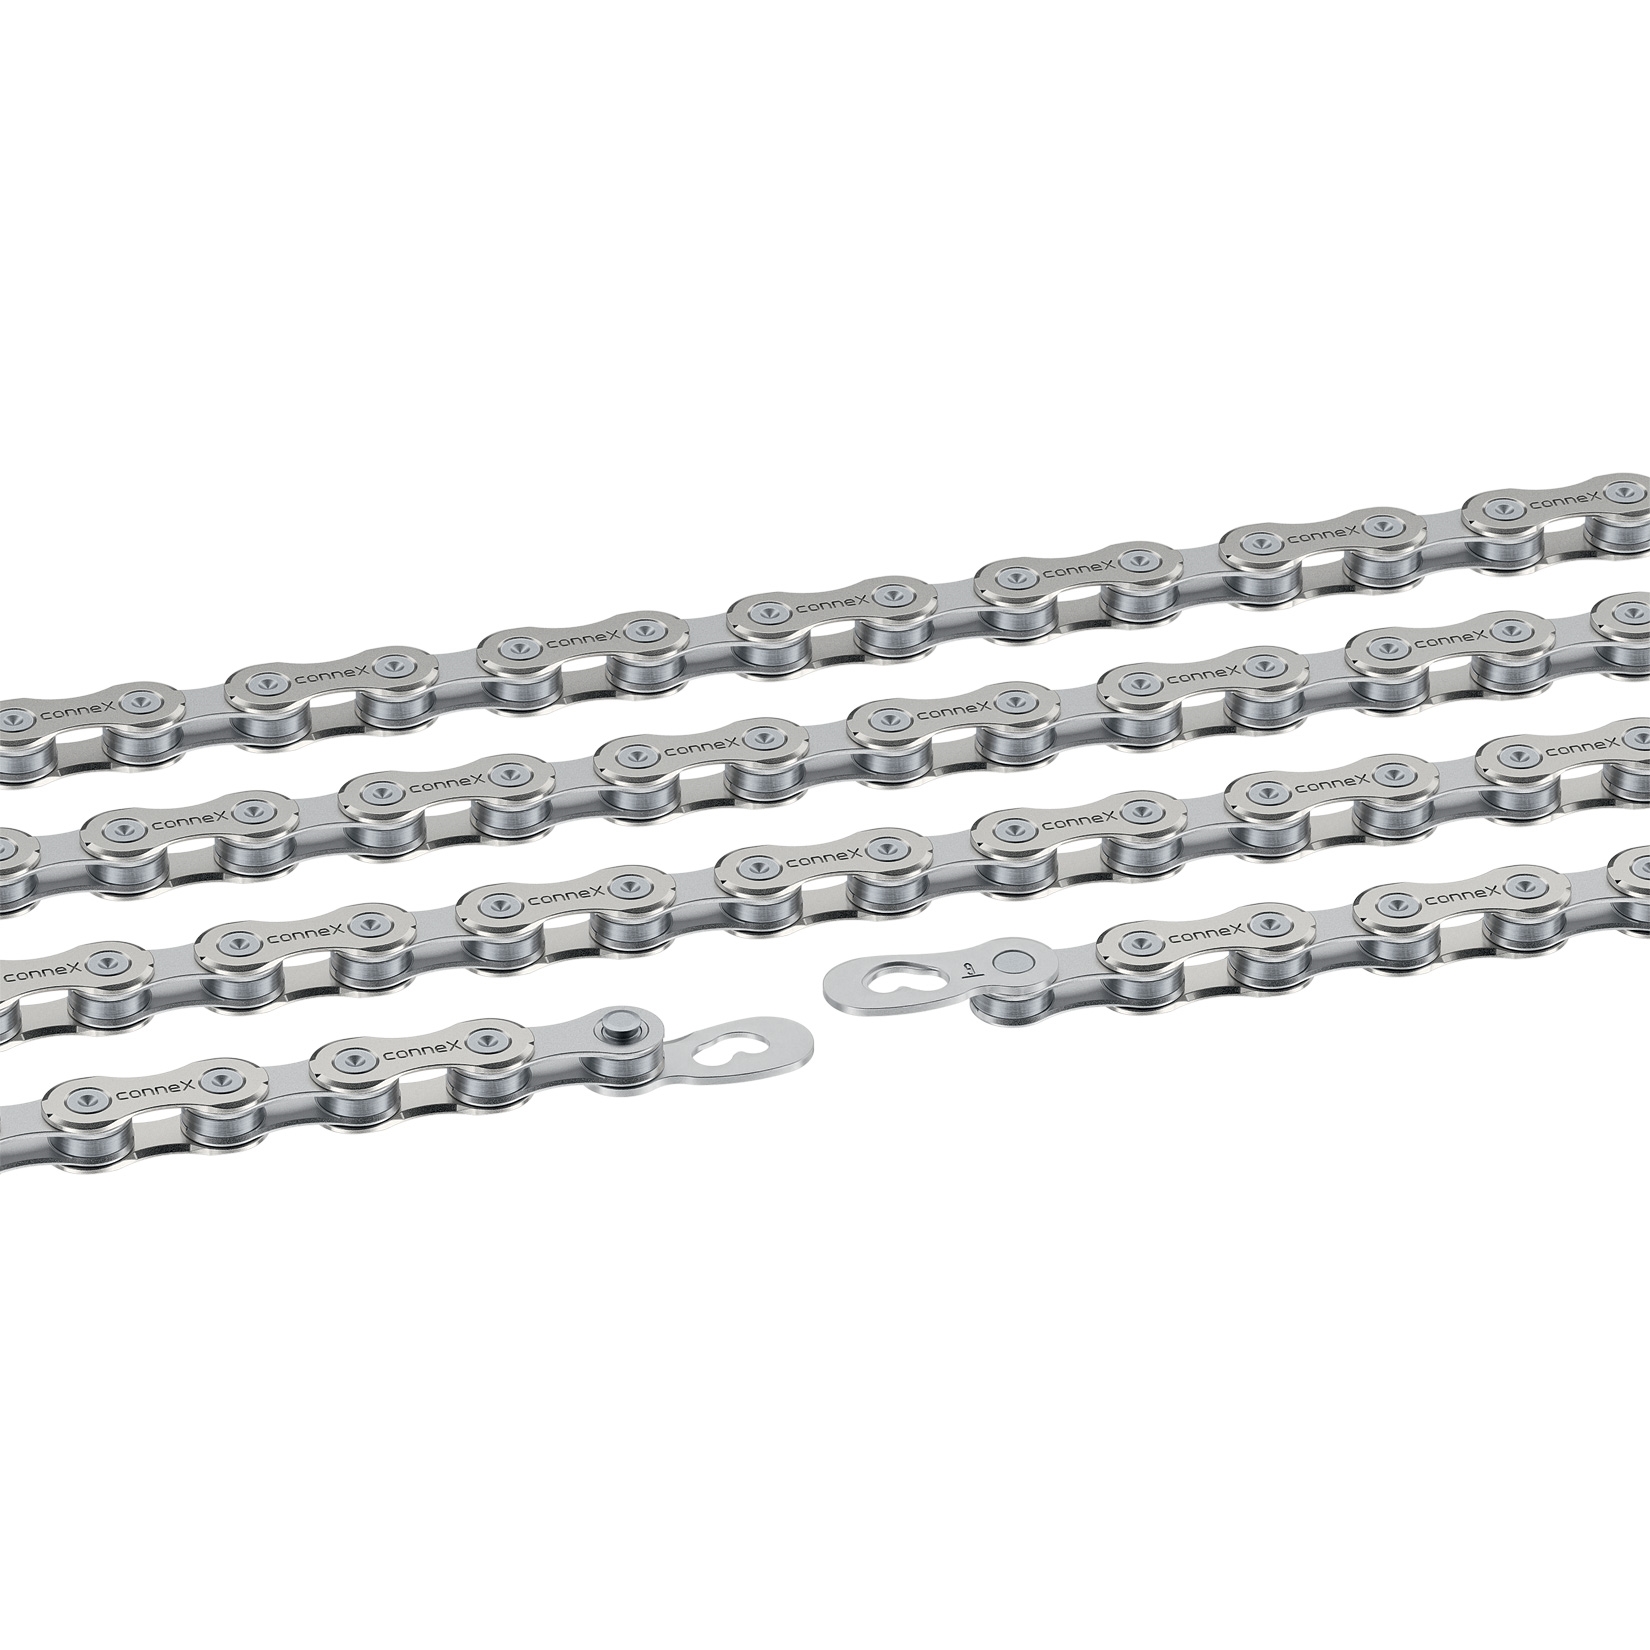 řetěz CONNEX 9sE pro E-BIKE 9-kolo, stříbrný